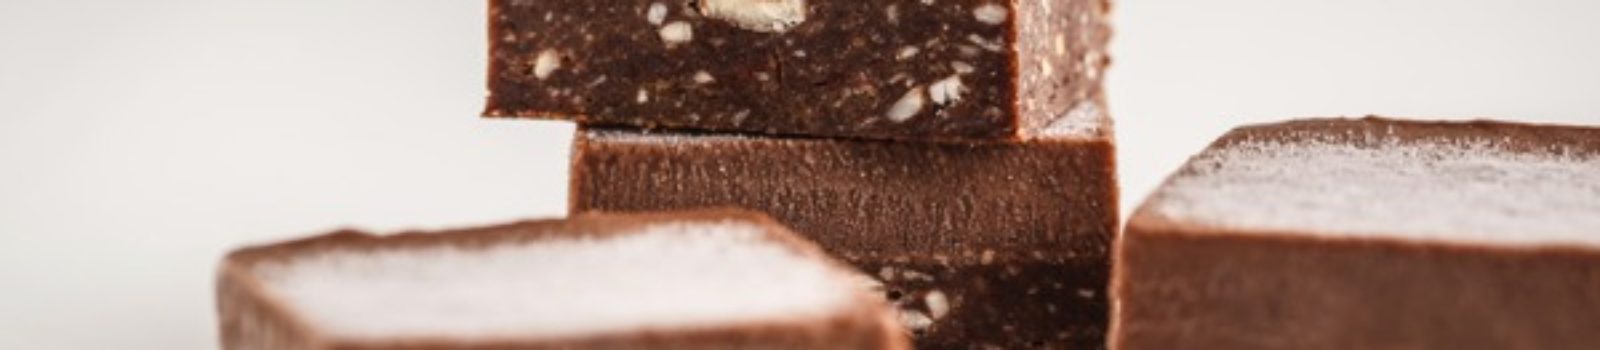 chocolate fudge bars (1)